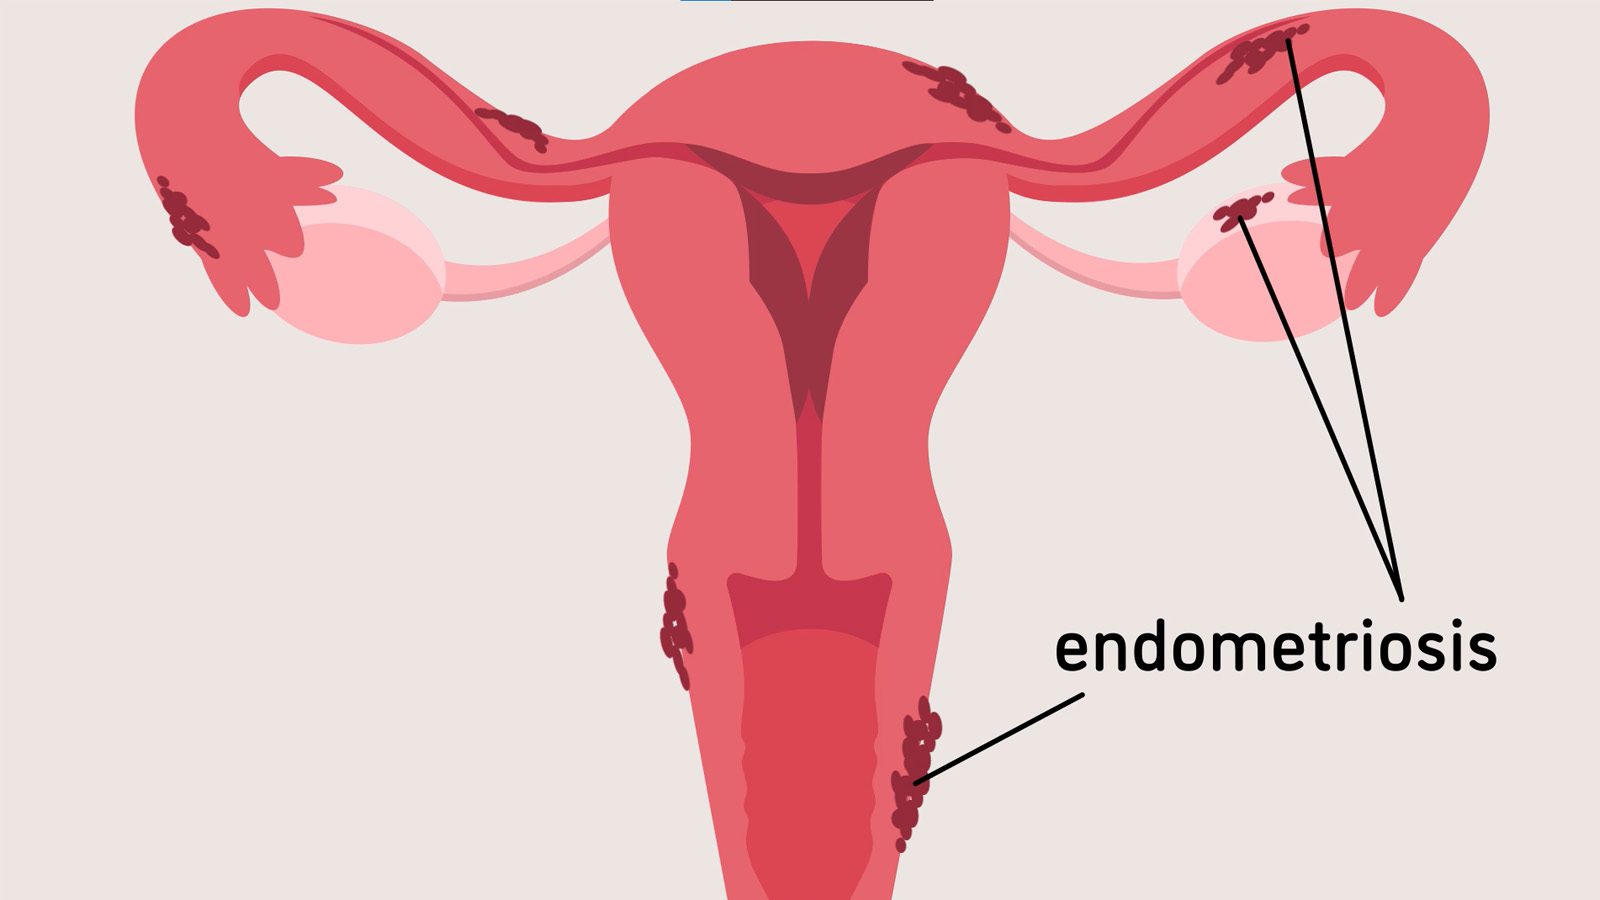 Jackson实验室“子宫内膜异位症是什么？”一分钟后了解的子宫图像。